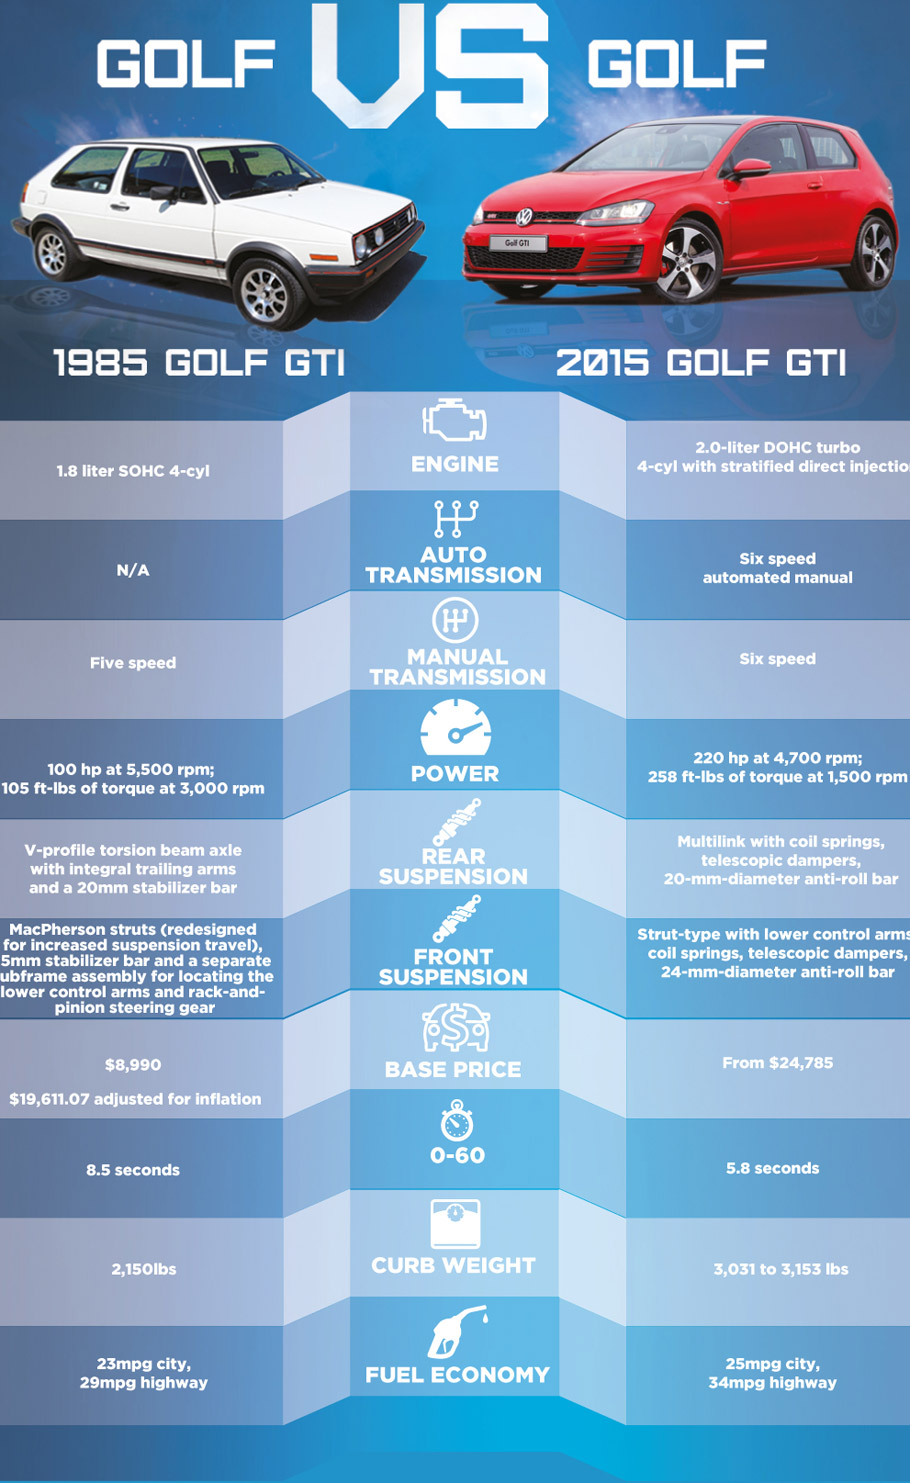 1985 Golf GTI vs 2015 Golf GTI - infographic